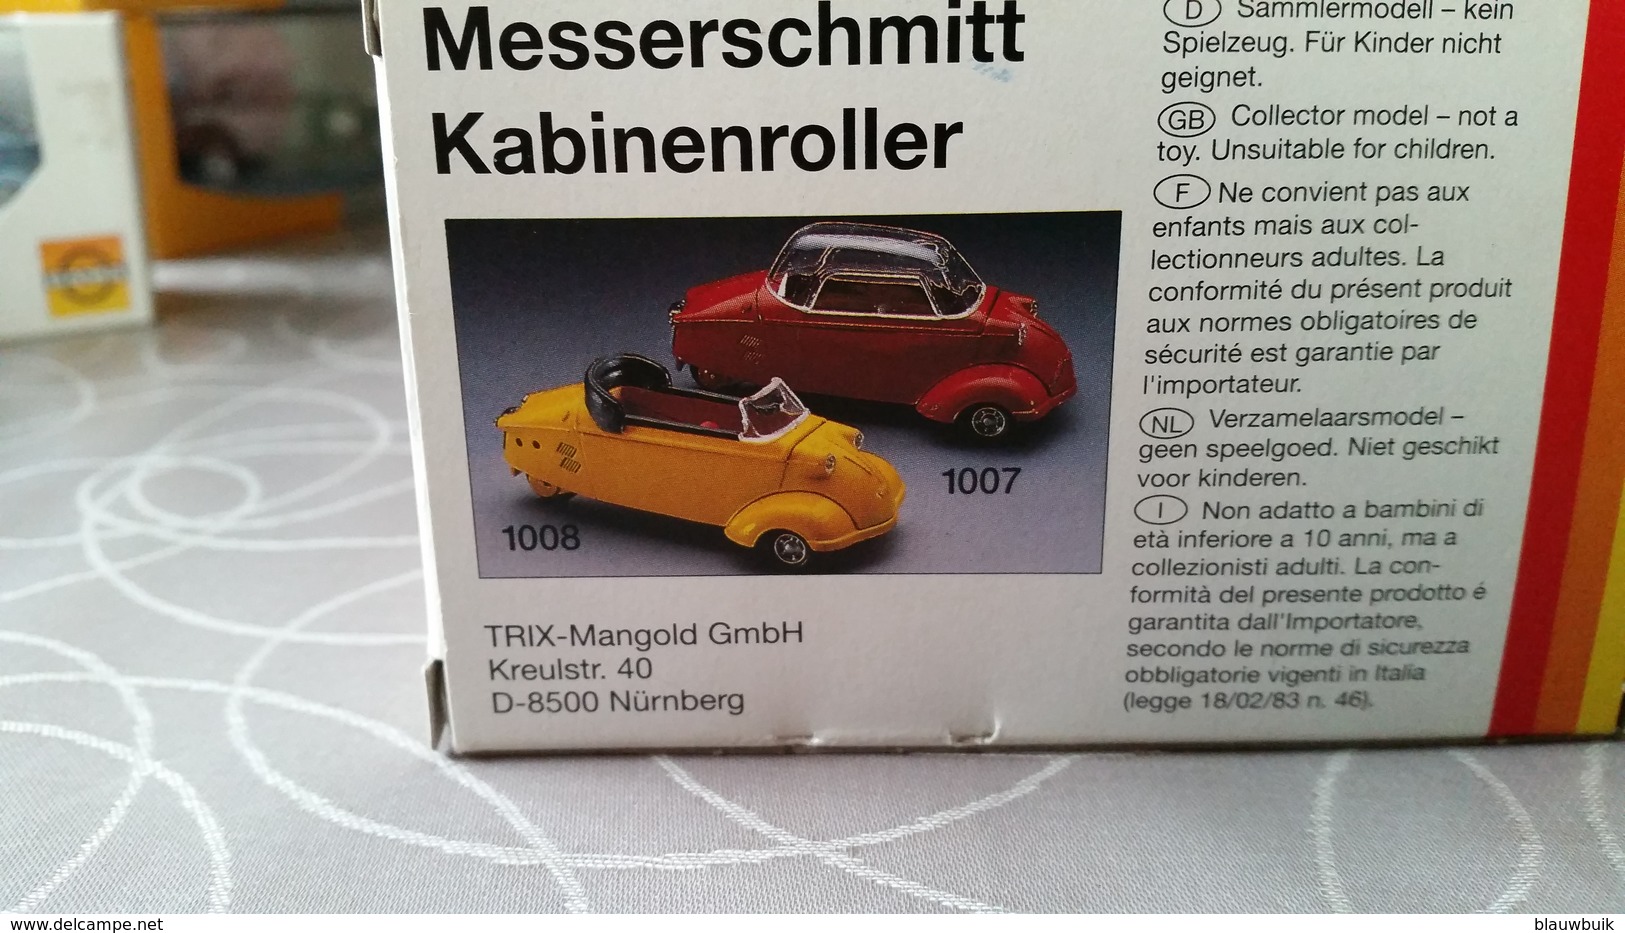 Gama Messerschmitt Kabinenroller Cabriolet - Red 1:43 - Mib - Gama